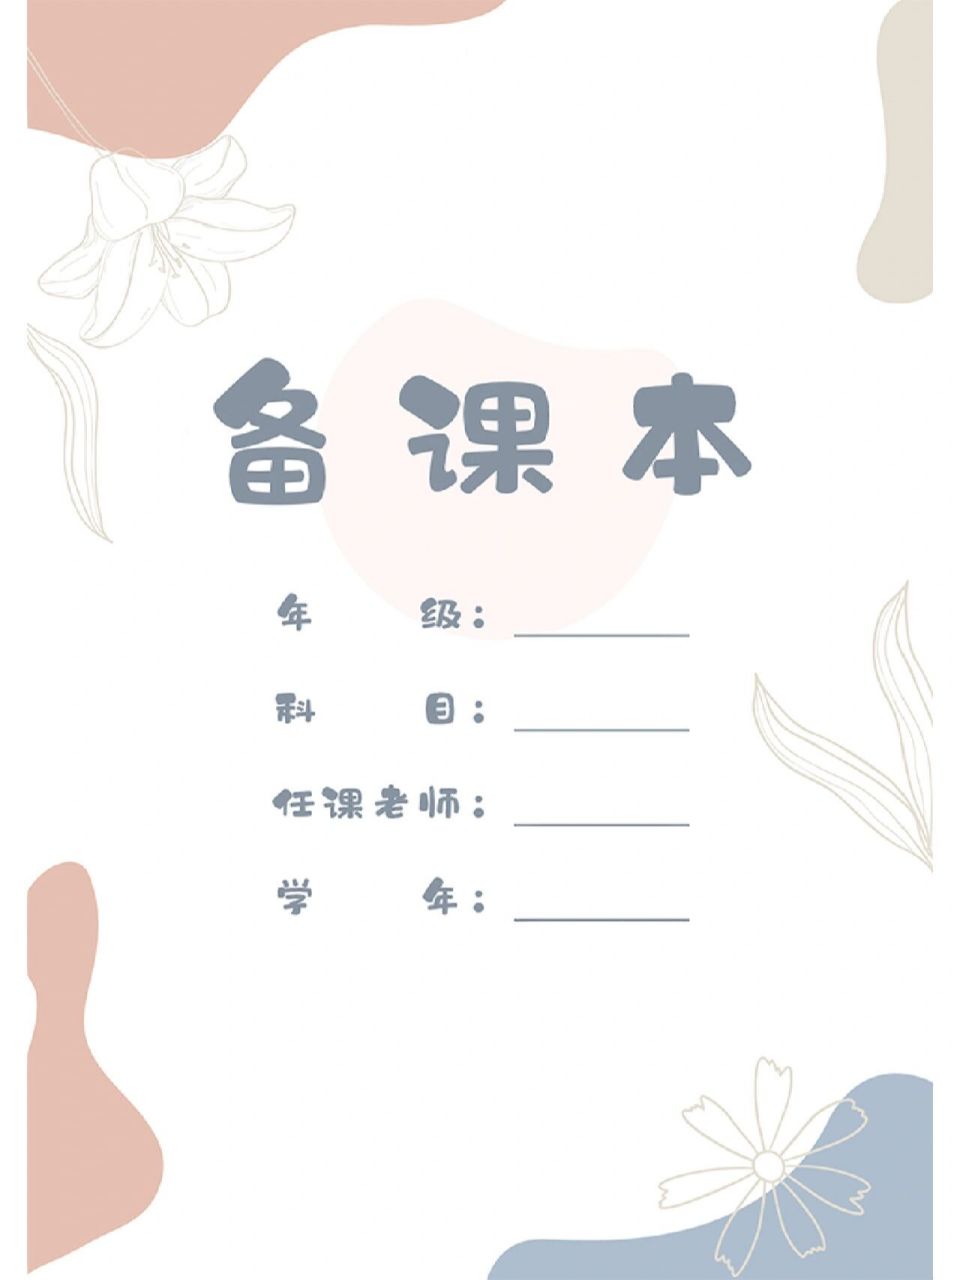 语文教案封面设计模板图片